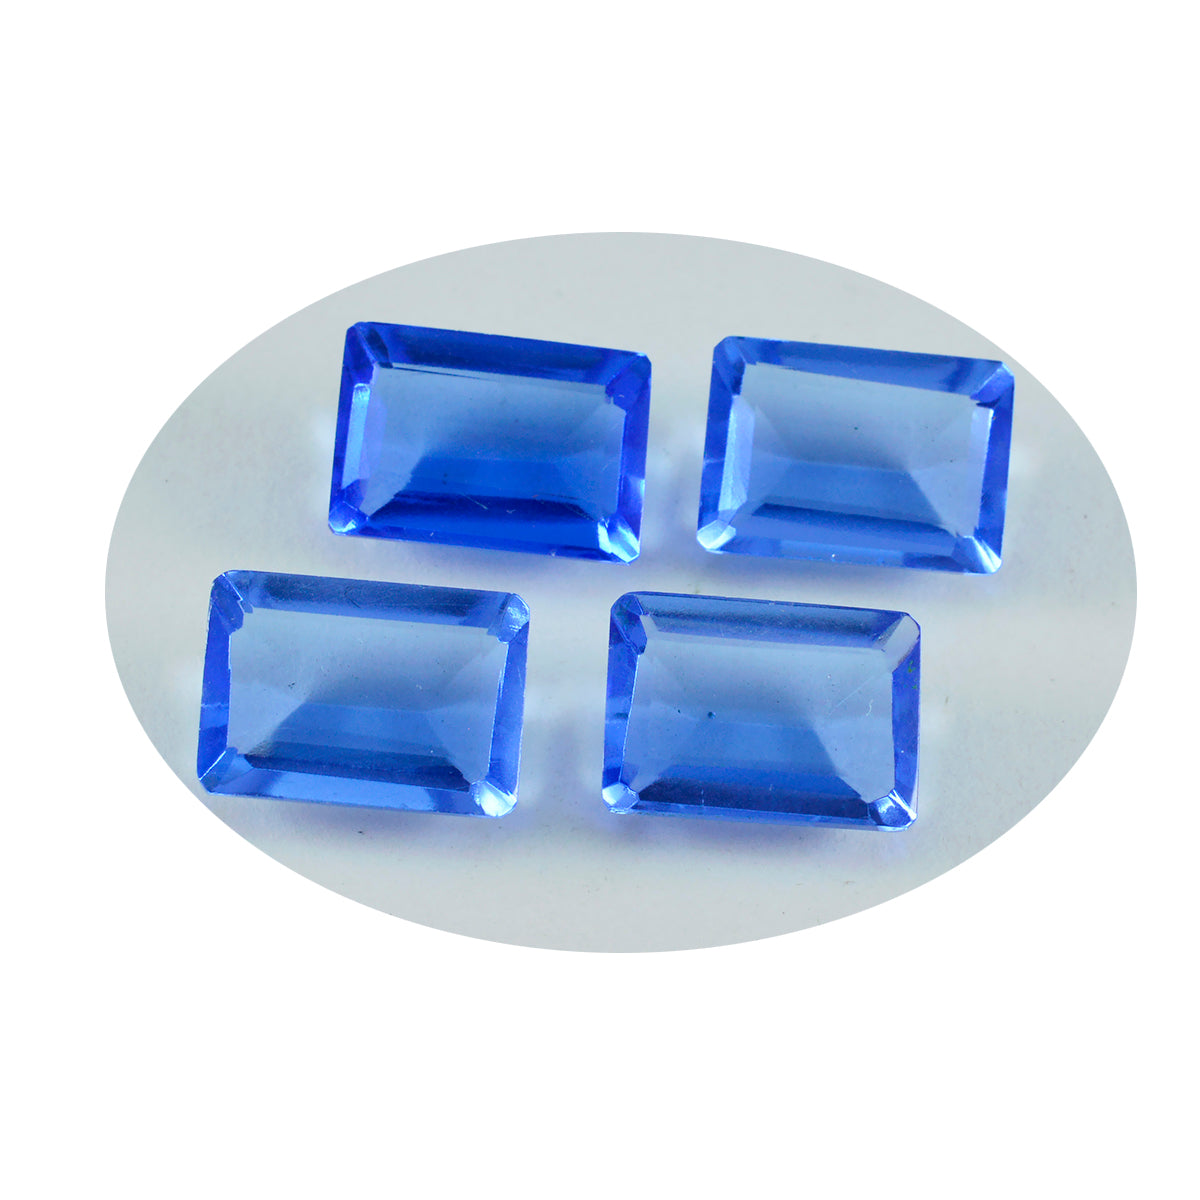 riyogems 1 шт. синий сапфир cz ограненный 10x14 мм восьмиугольная форма красивые качественные драгоценные камни